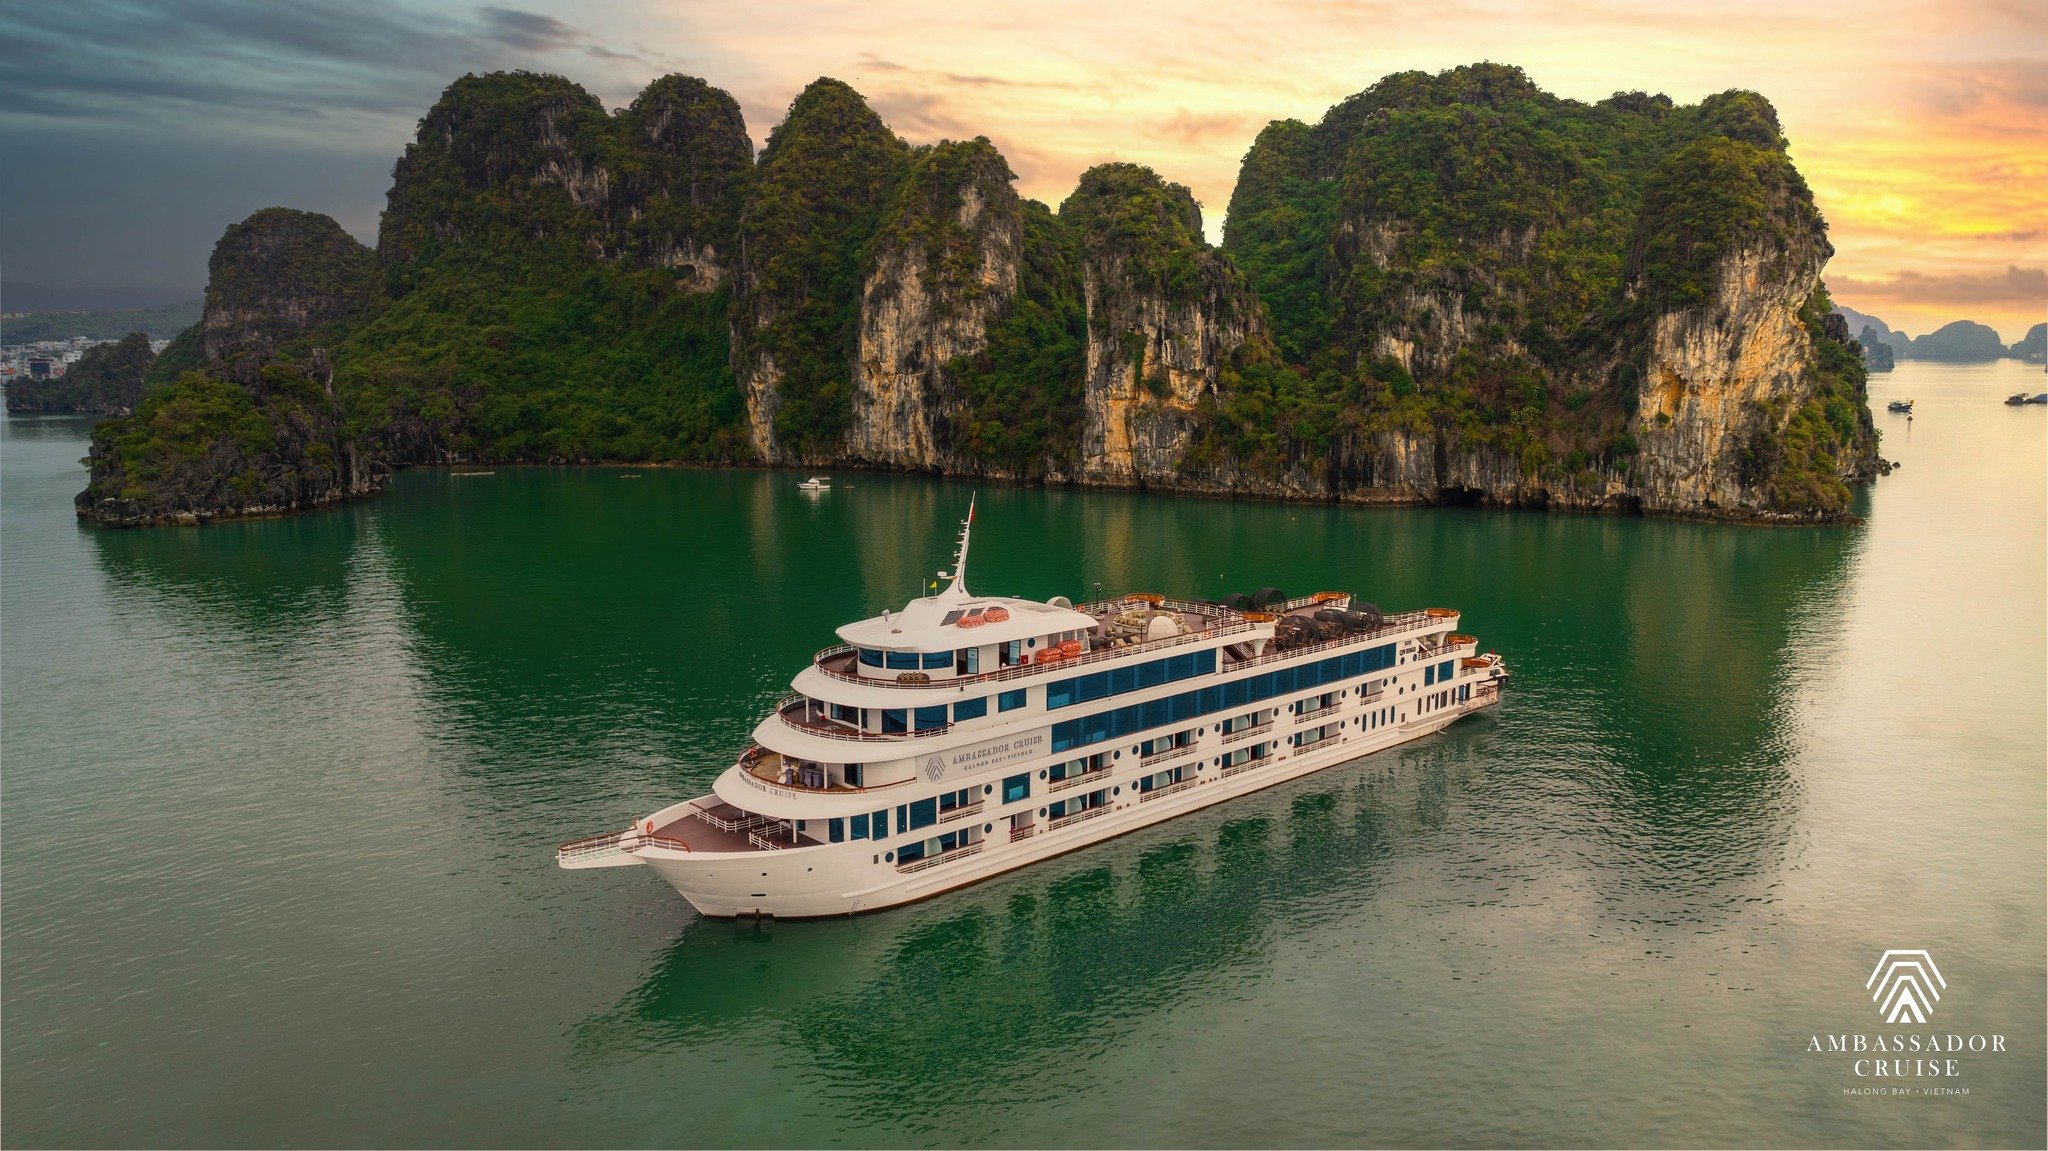 Hình ảnh Tour du thuyền Ambassador 5 sao thăm vịnh Hạ Long 8 tiếng